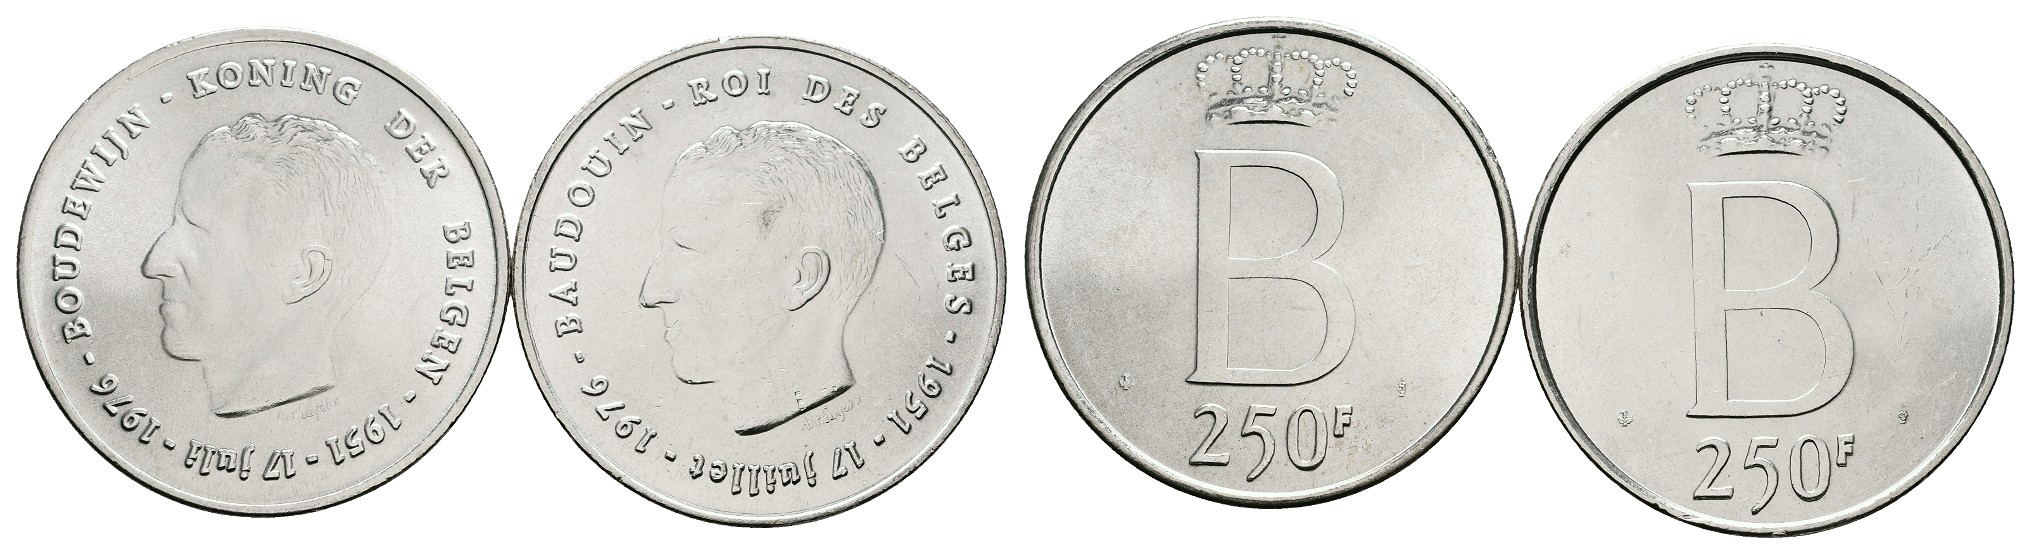  MGS Ungarn 200 Forint 1979 Jahr des Kindes PP Feingewicht: 17,92g   